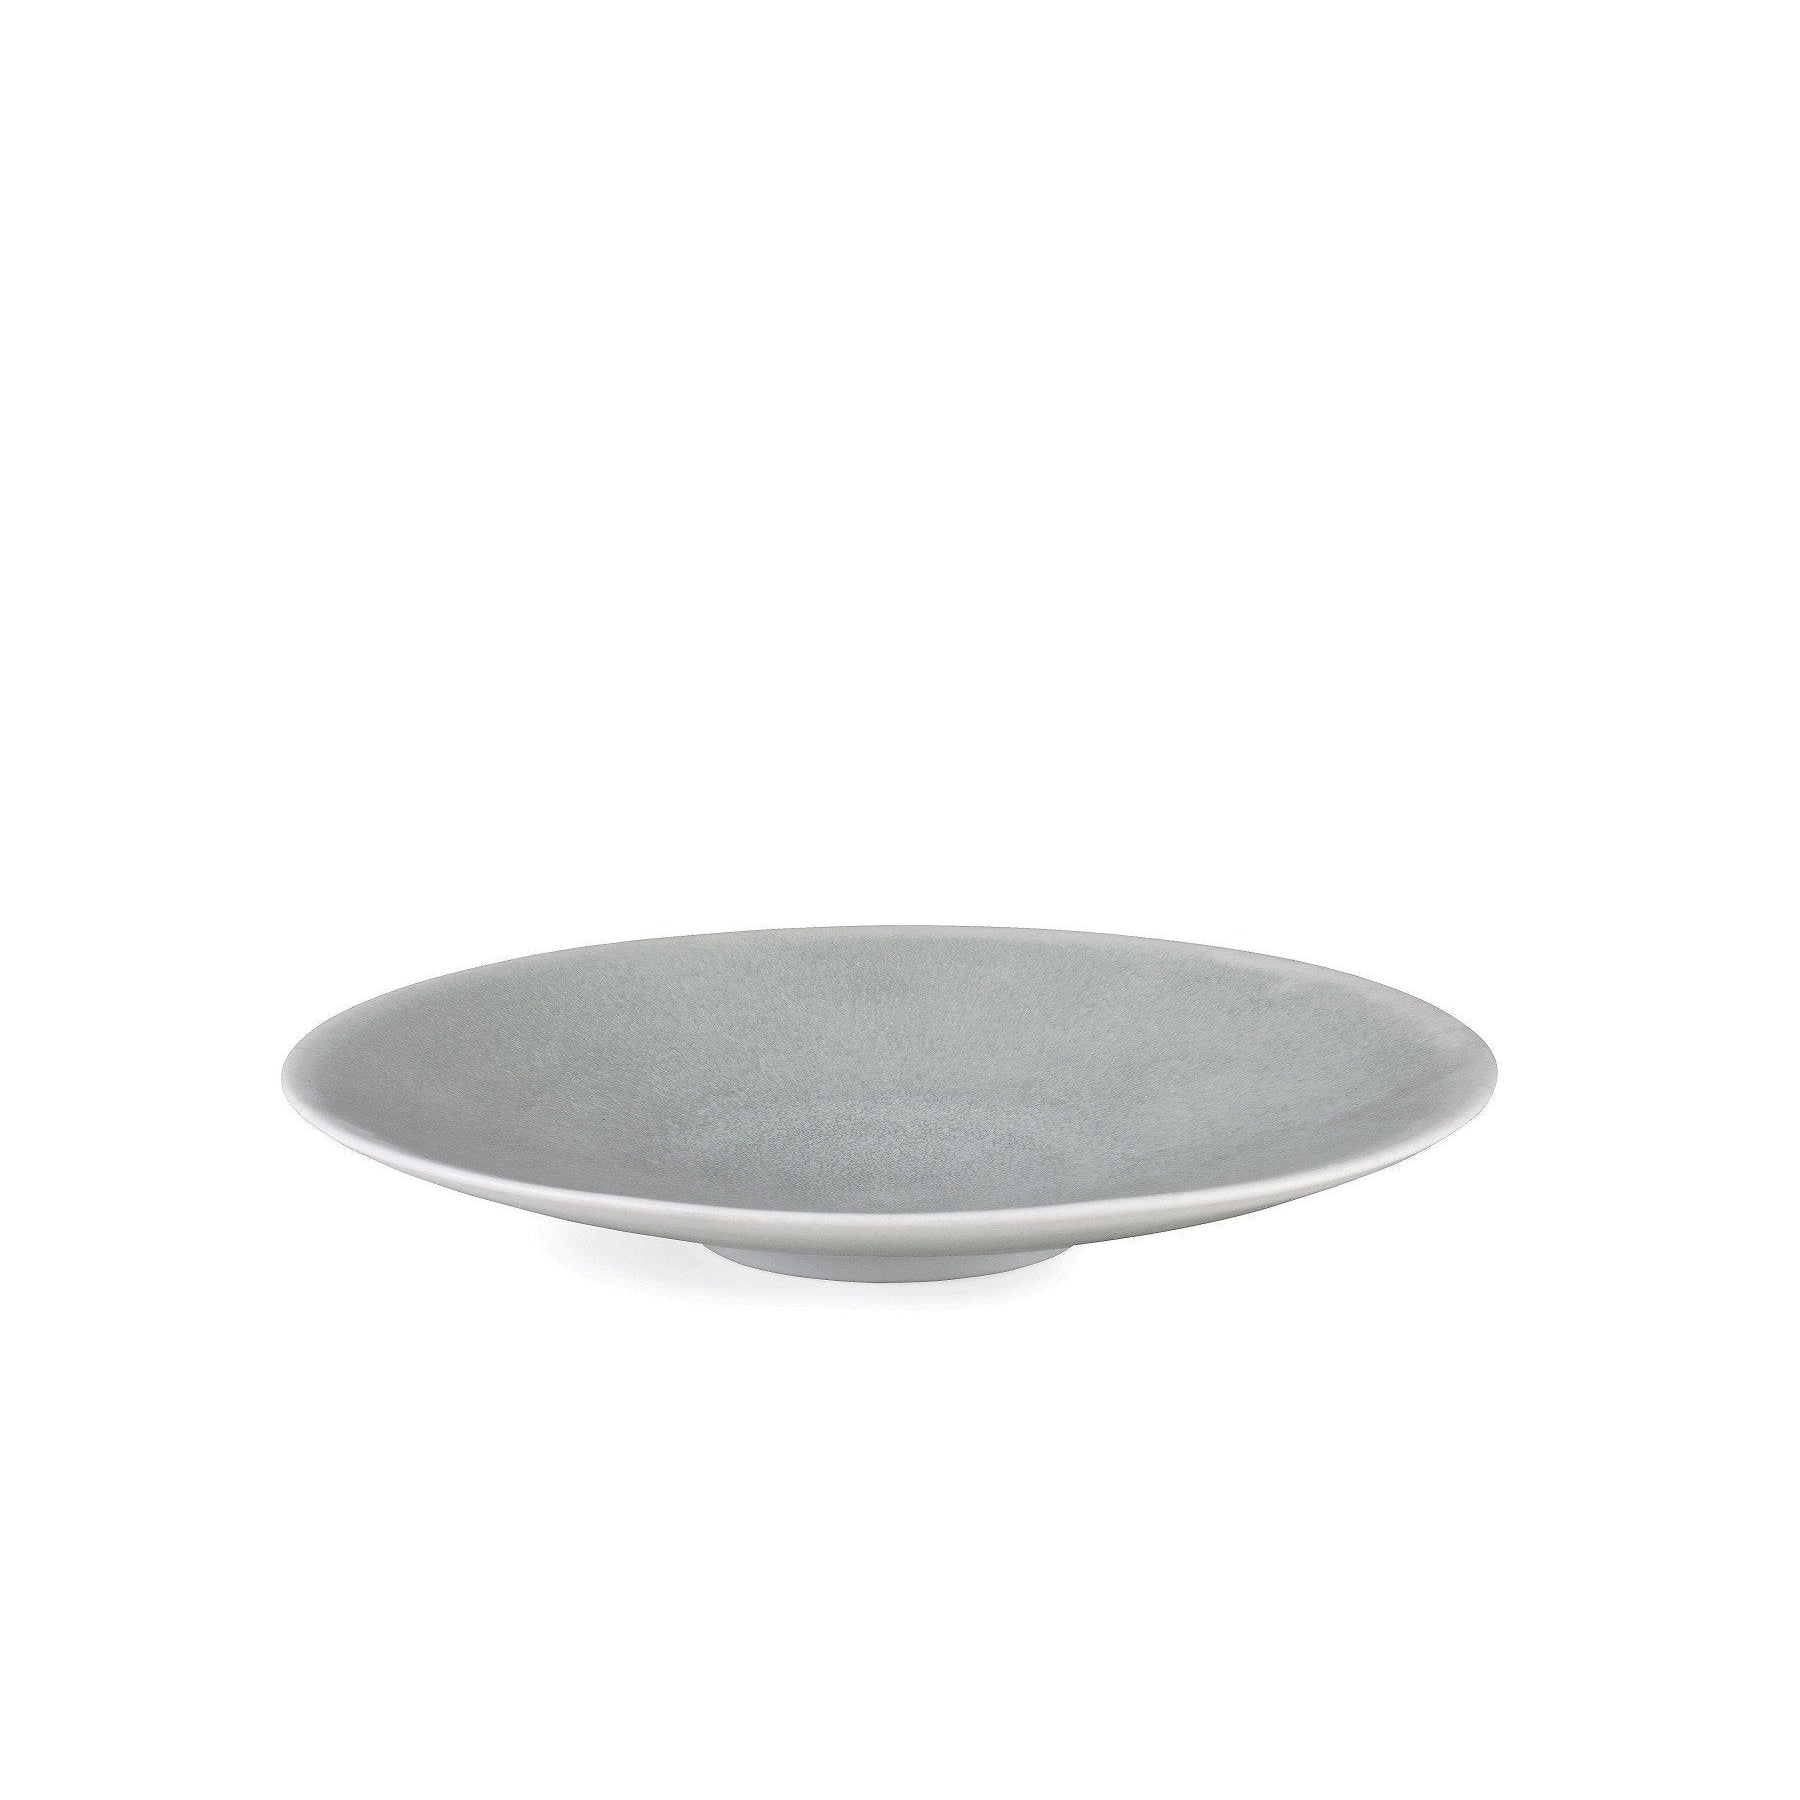 Kähler Unico Service Bowl, marbre gris